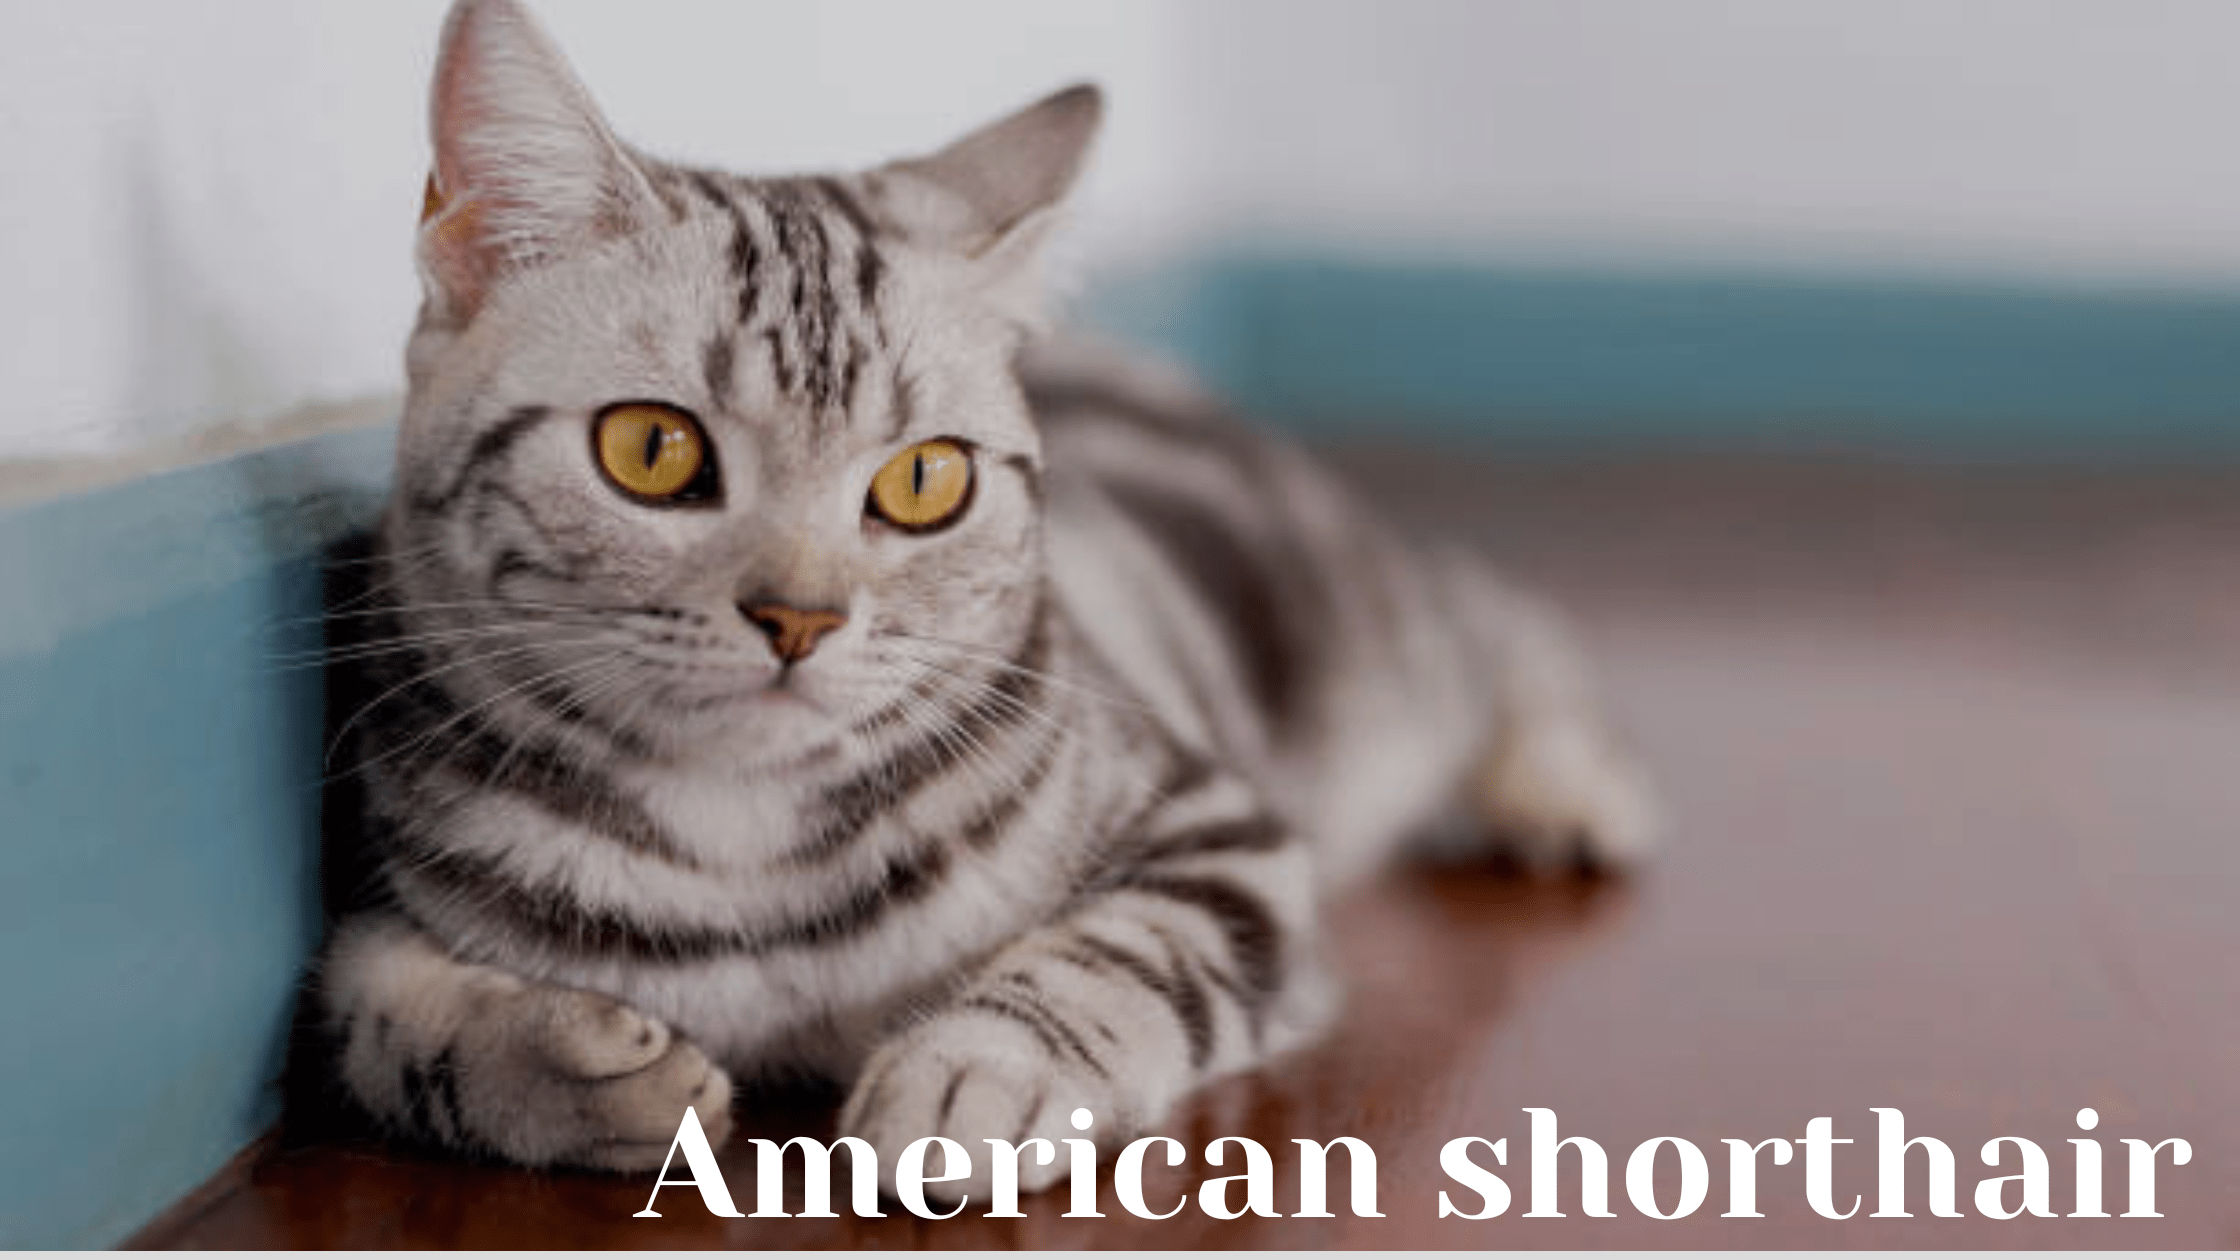 American shorthair